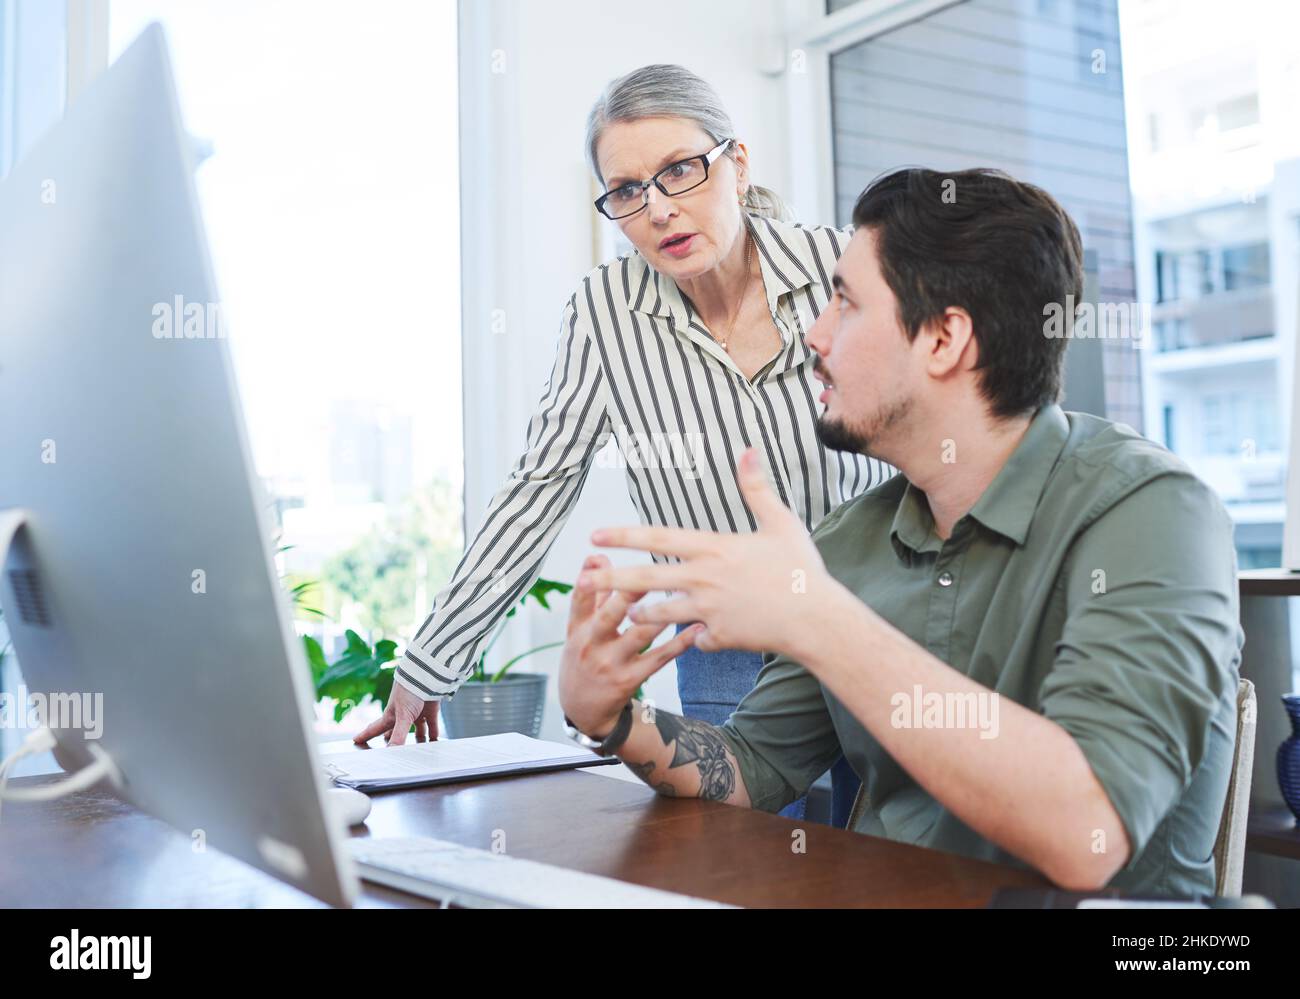 Créer quelque chose d'innovant ensemble.Photo de deux hommes d'affaires travaillant ensemble sur un ordinateur dans un bureau. Banque D'Images